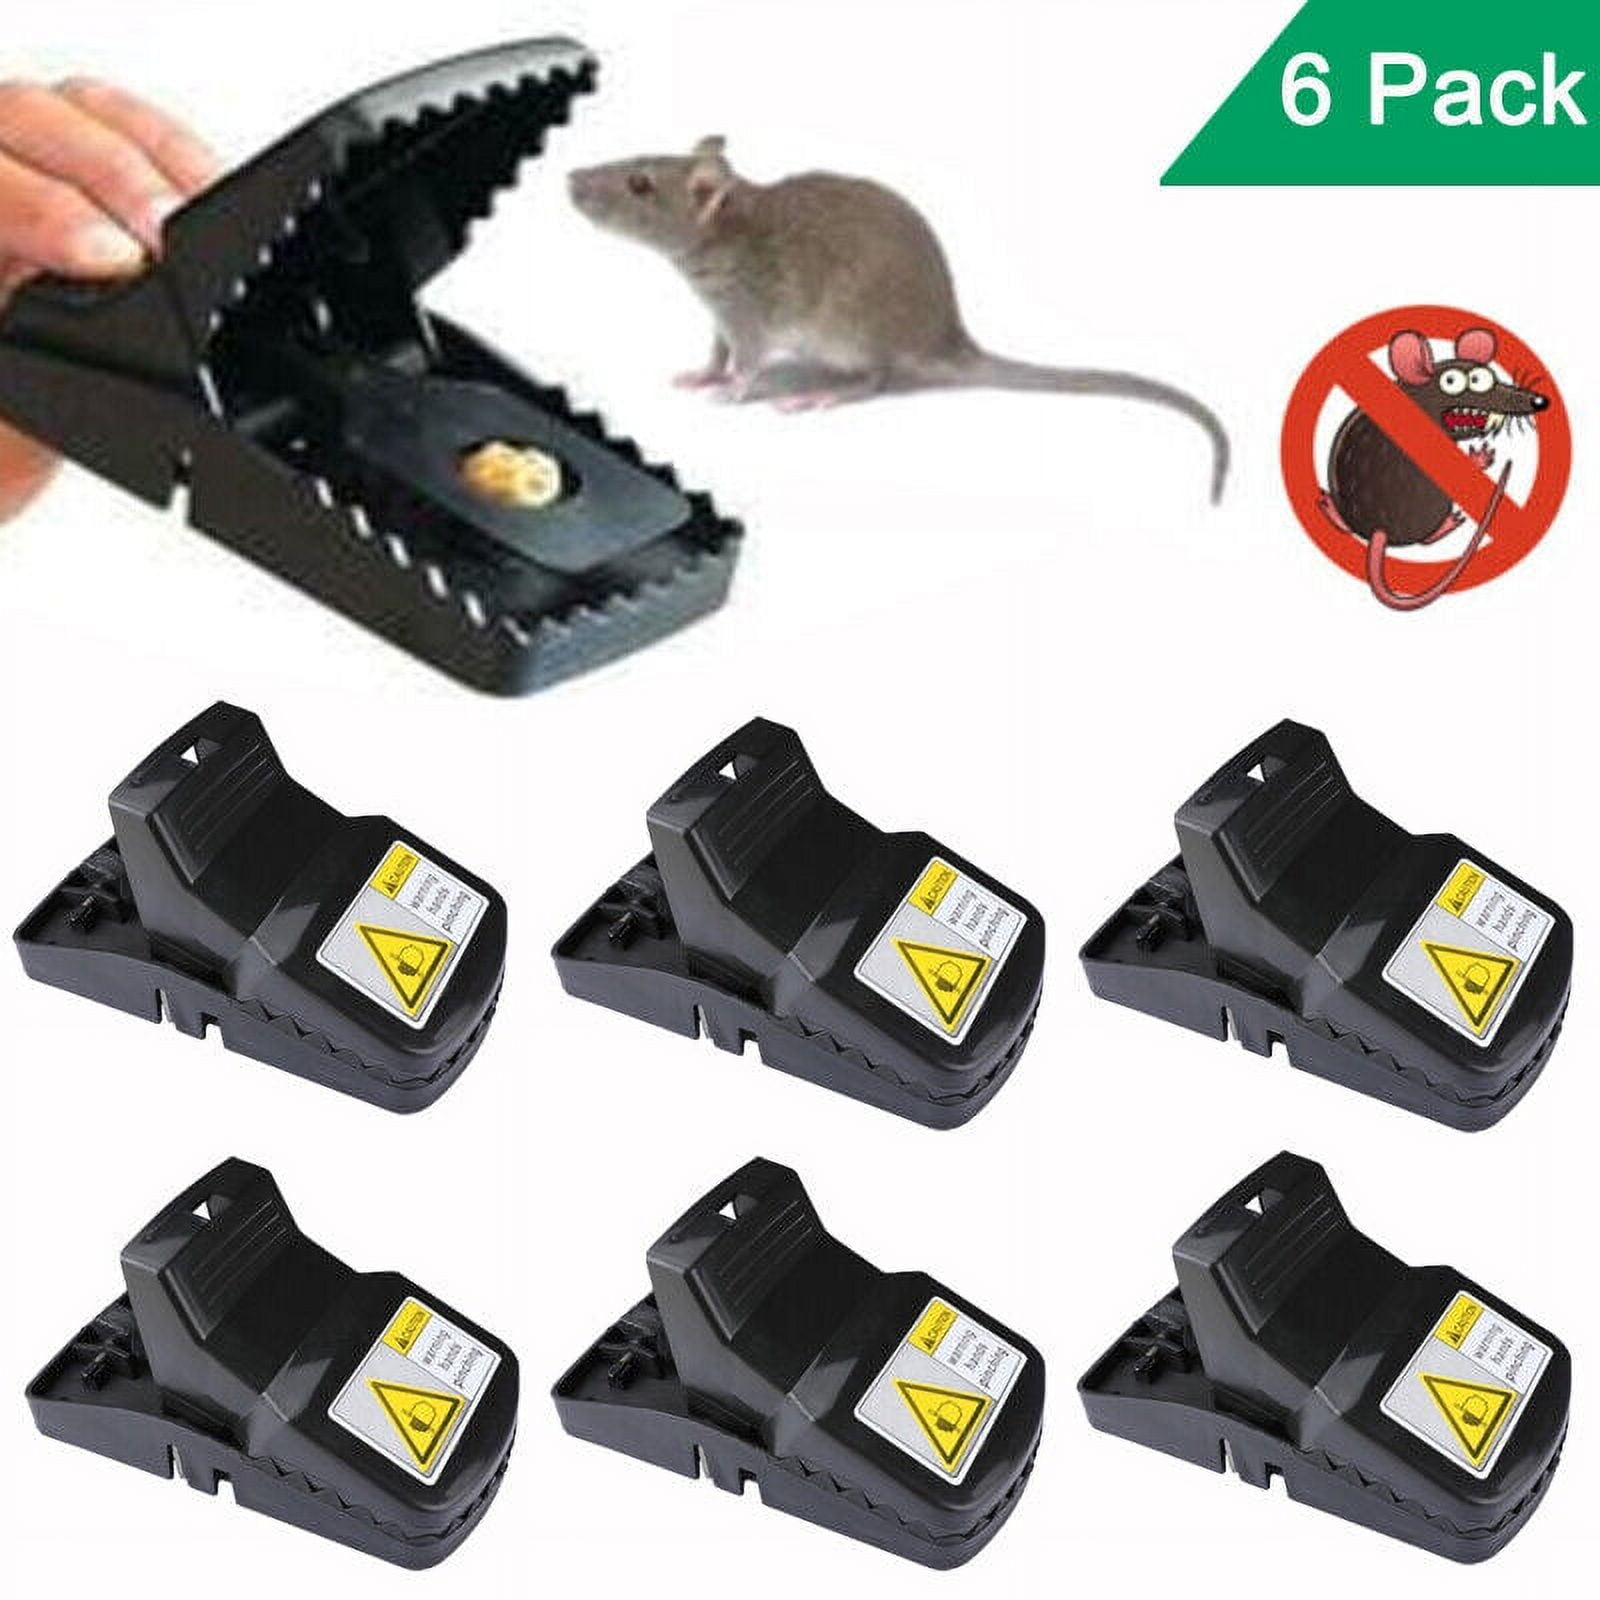 2/6pcs Mouse Snap Traps High Sensitive Snap Mice Catching Rat Traps Pest  Control Reusable Rodent Catcher Mouse Pest Killer Hot - AliExpress